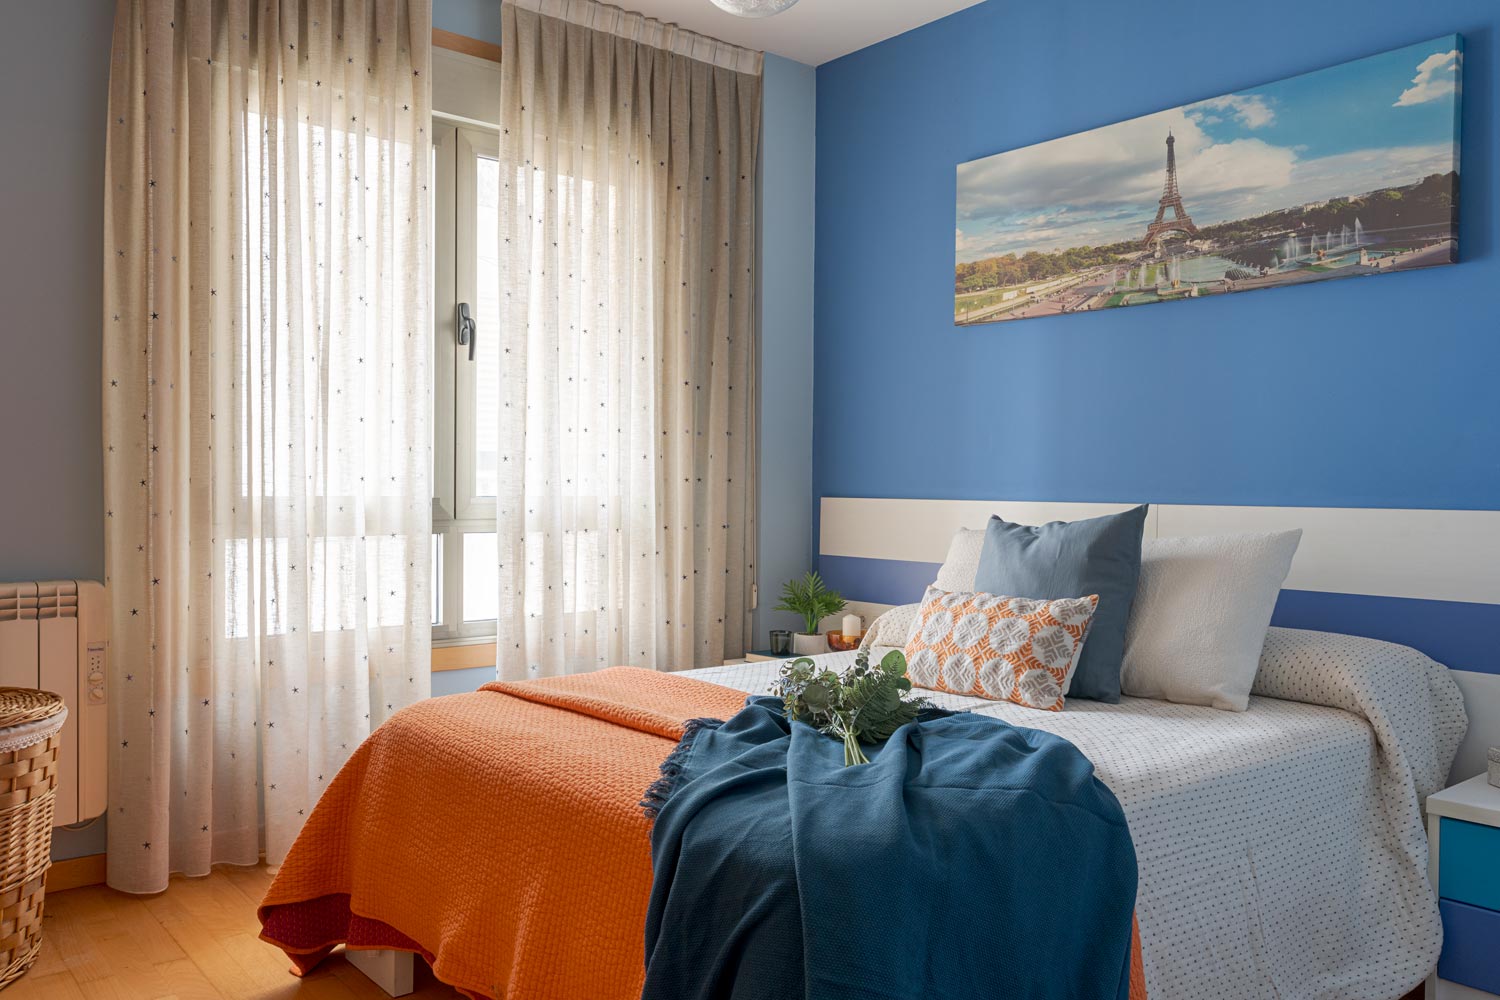 Habitación acogedora con paredes azules y franja blanca, cama individual con ropa de cama en tonos naranja y azul, y cortinas claras, en Sada